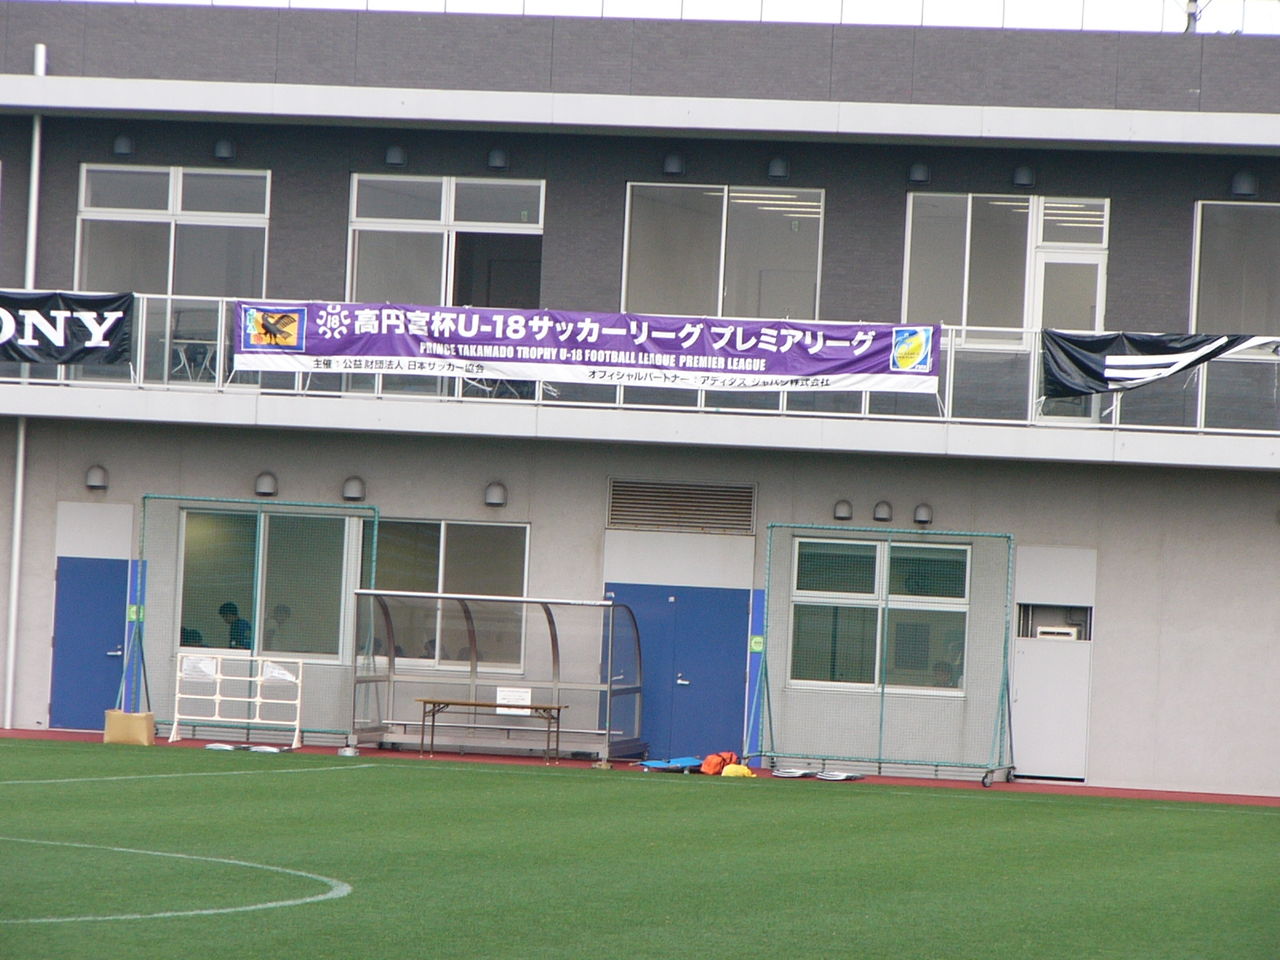 大阪ダービー再び ユースプレミアリーグ アカデミー便り 14 ほくせつ青黒つーしん ほくつー ガンバ大阪でホームタウンを盛り上げるための情報サイト